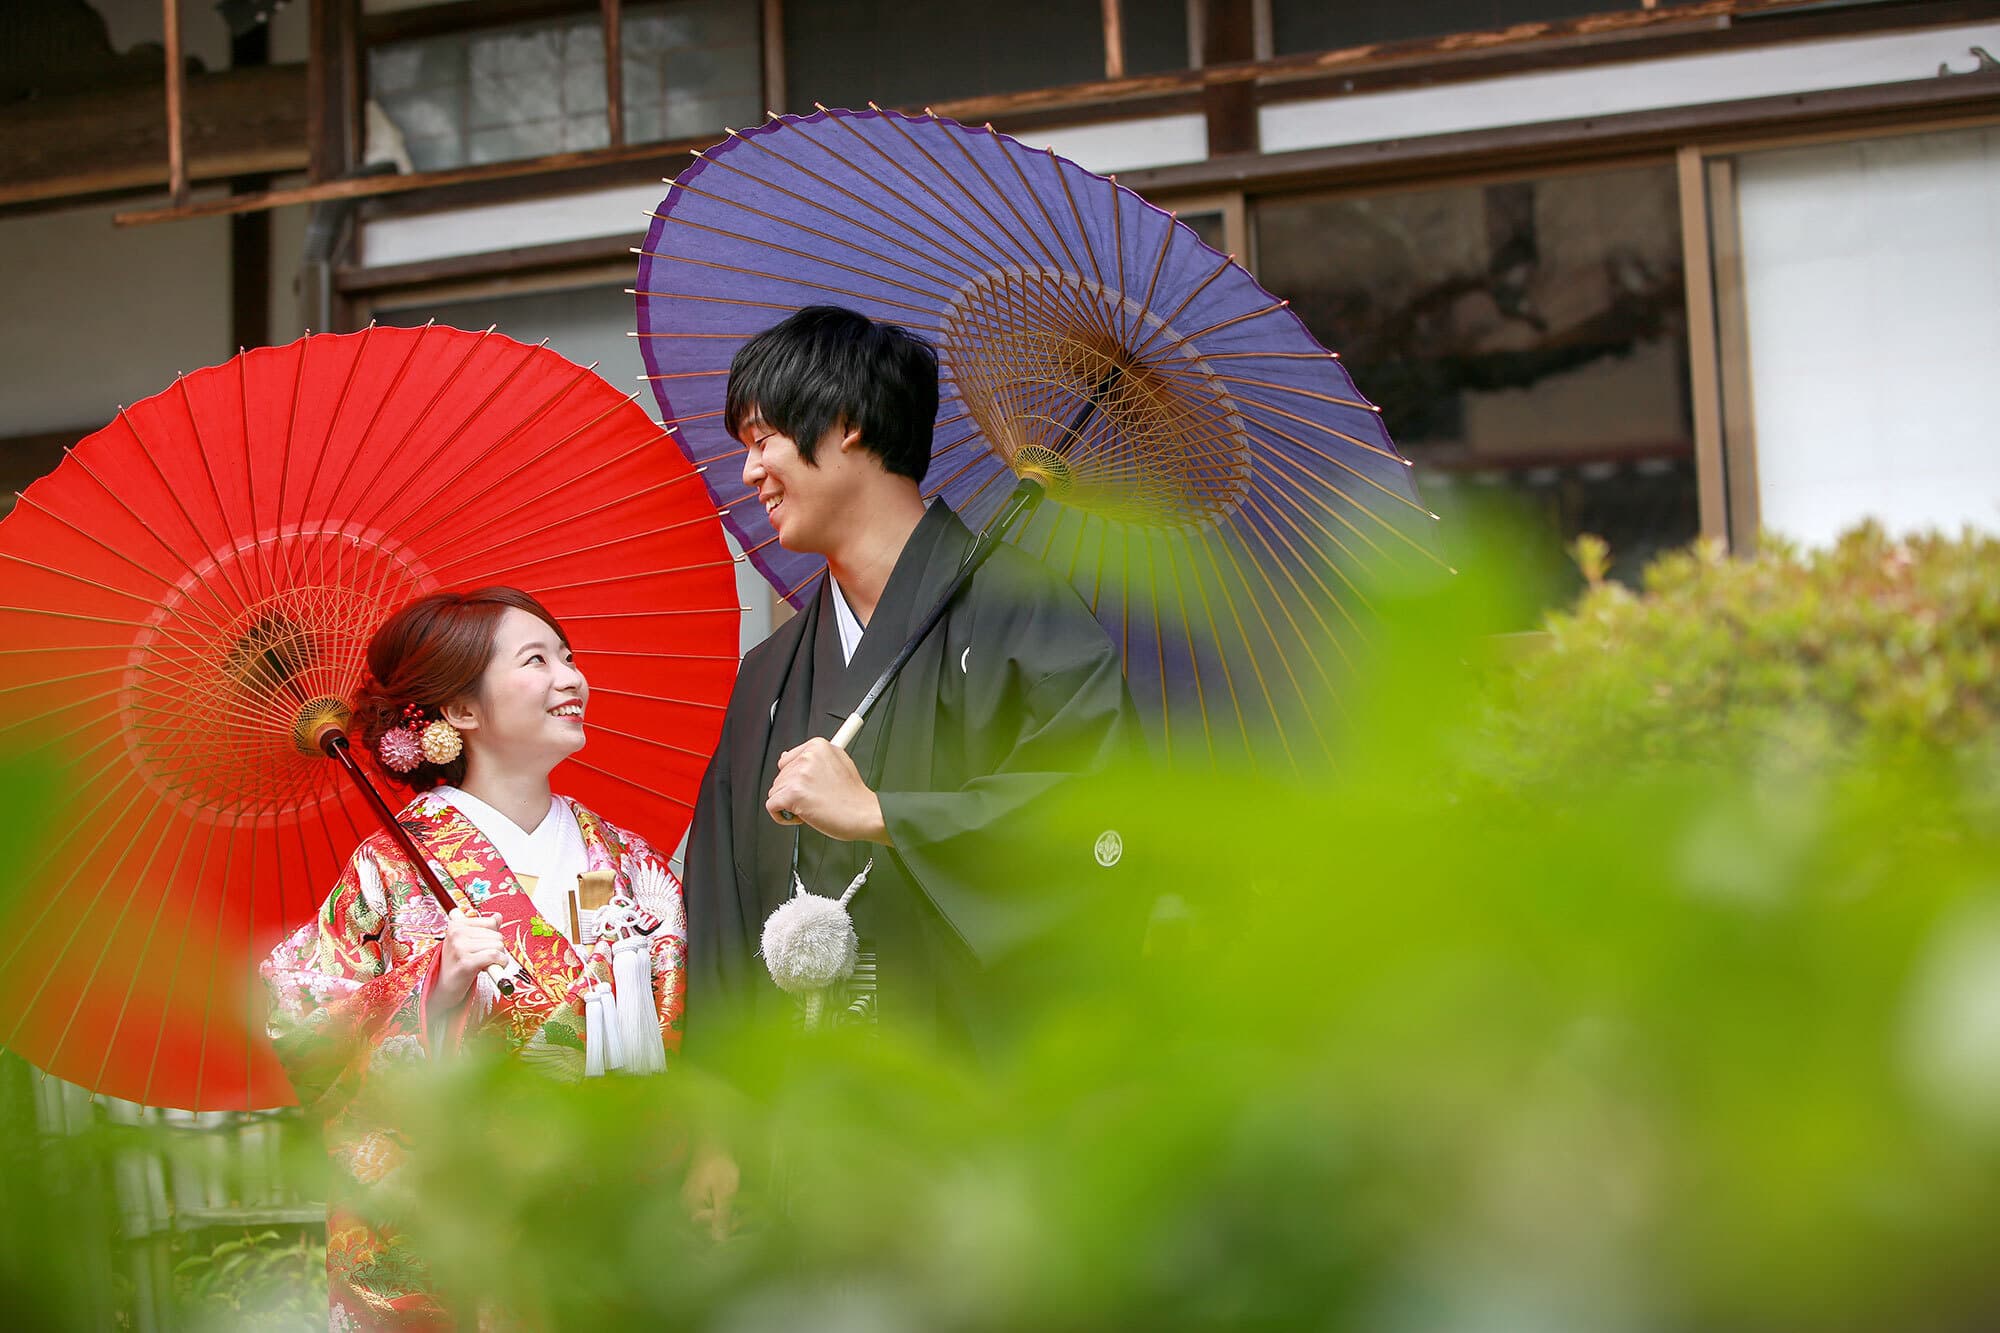 京都市嵐山で結婚式前撮り撮影